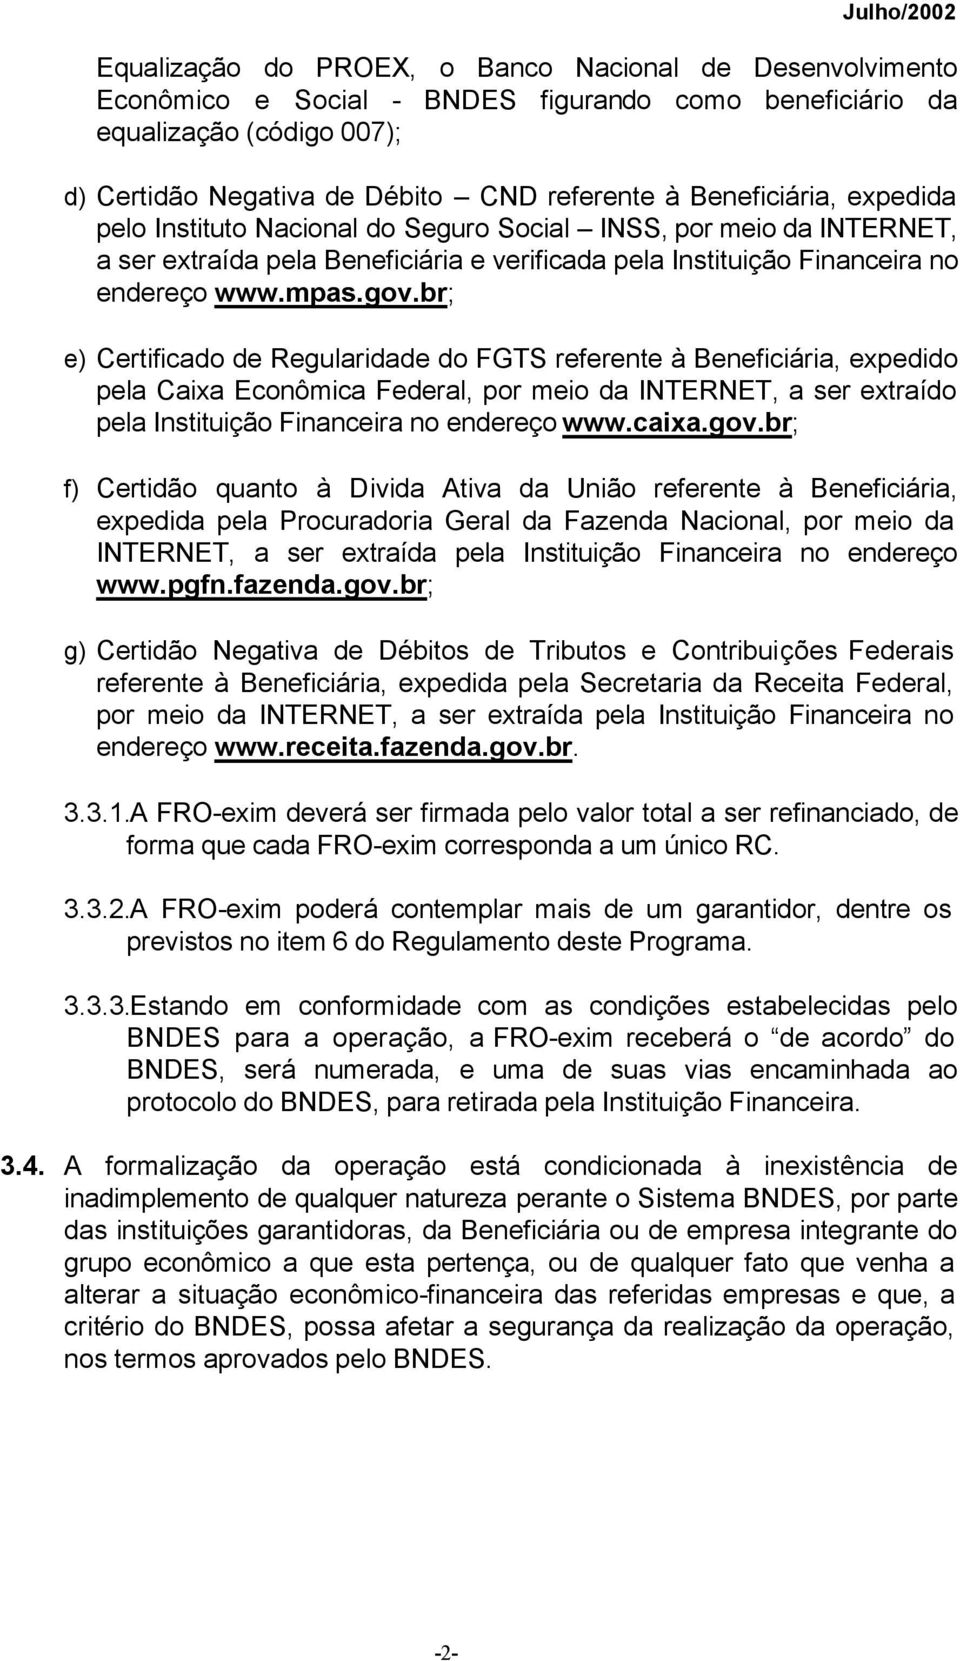 br; e) Certificado de Regularidade do FGTS referente à Beneficiária, expedido pela Caixa Econômica Federal, por meio da INTERNET, a ser extraído pela Instituição Financeira no endereço www.caixa.gov.